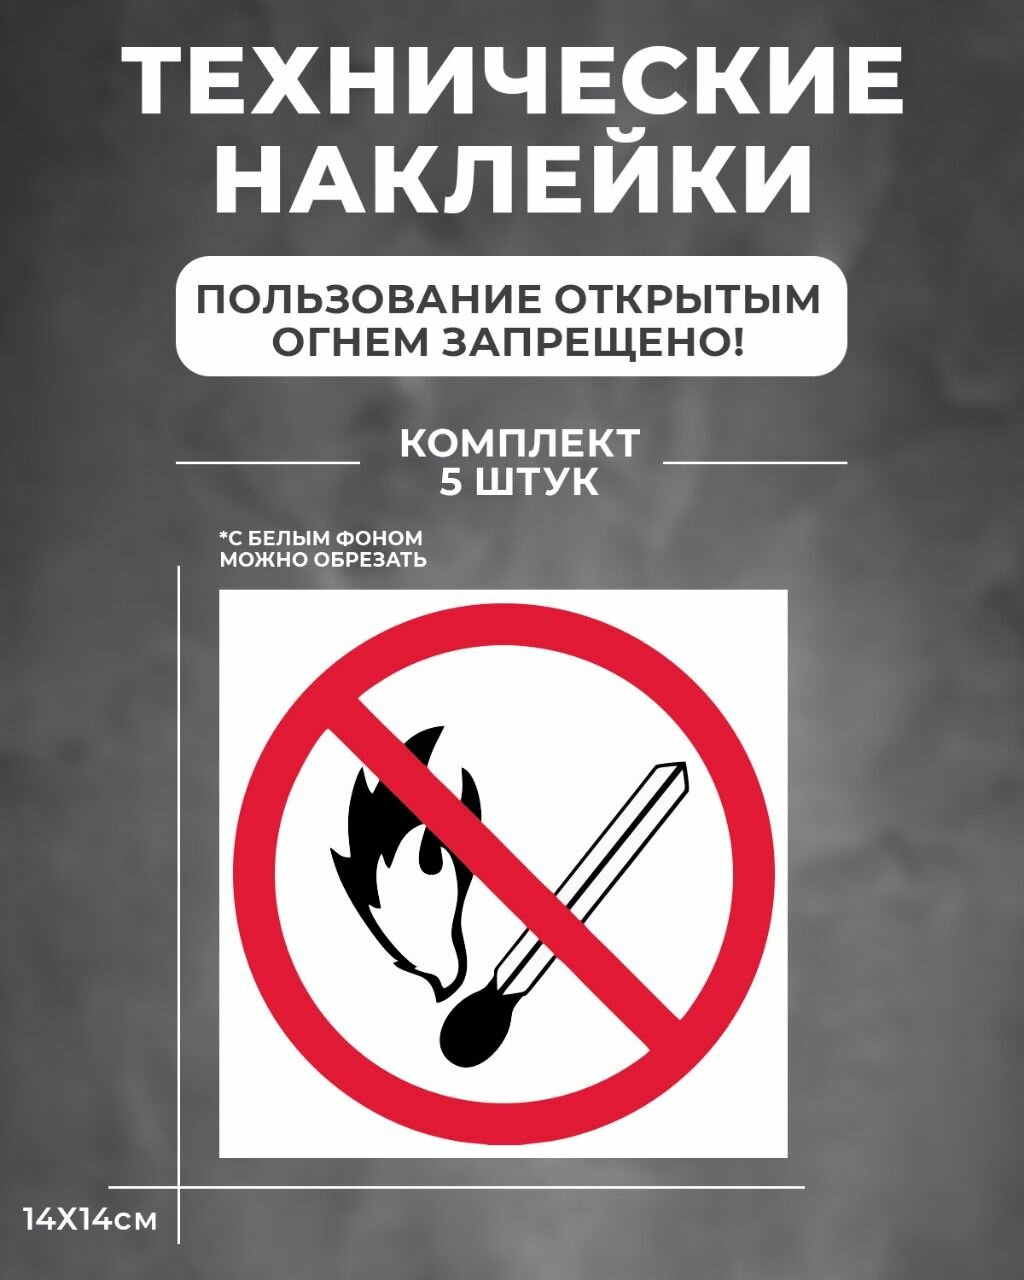 Наклейка "Пользование открытым огнем запрещено"